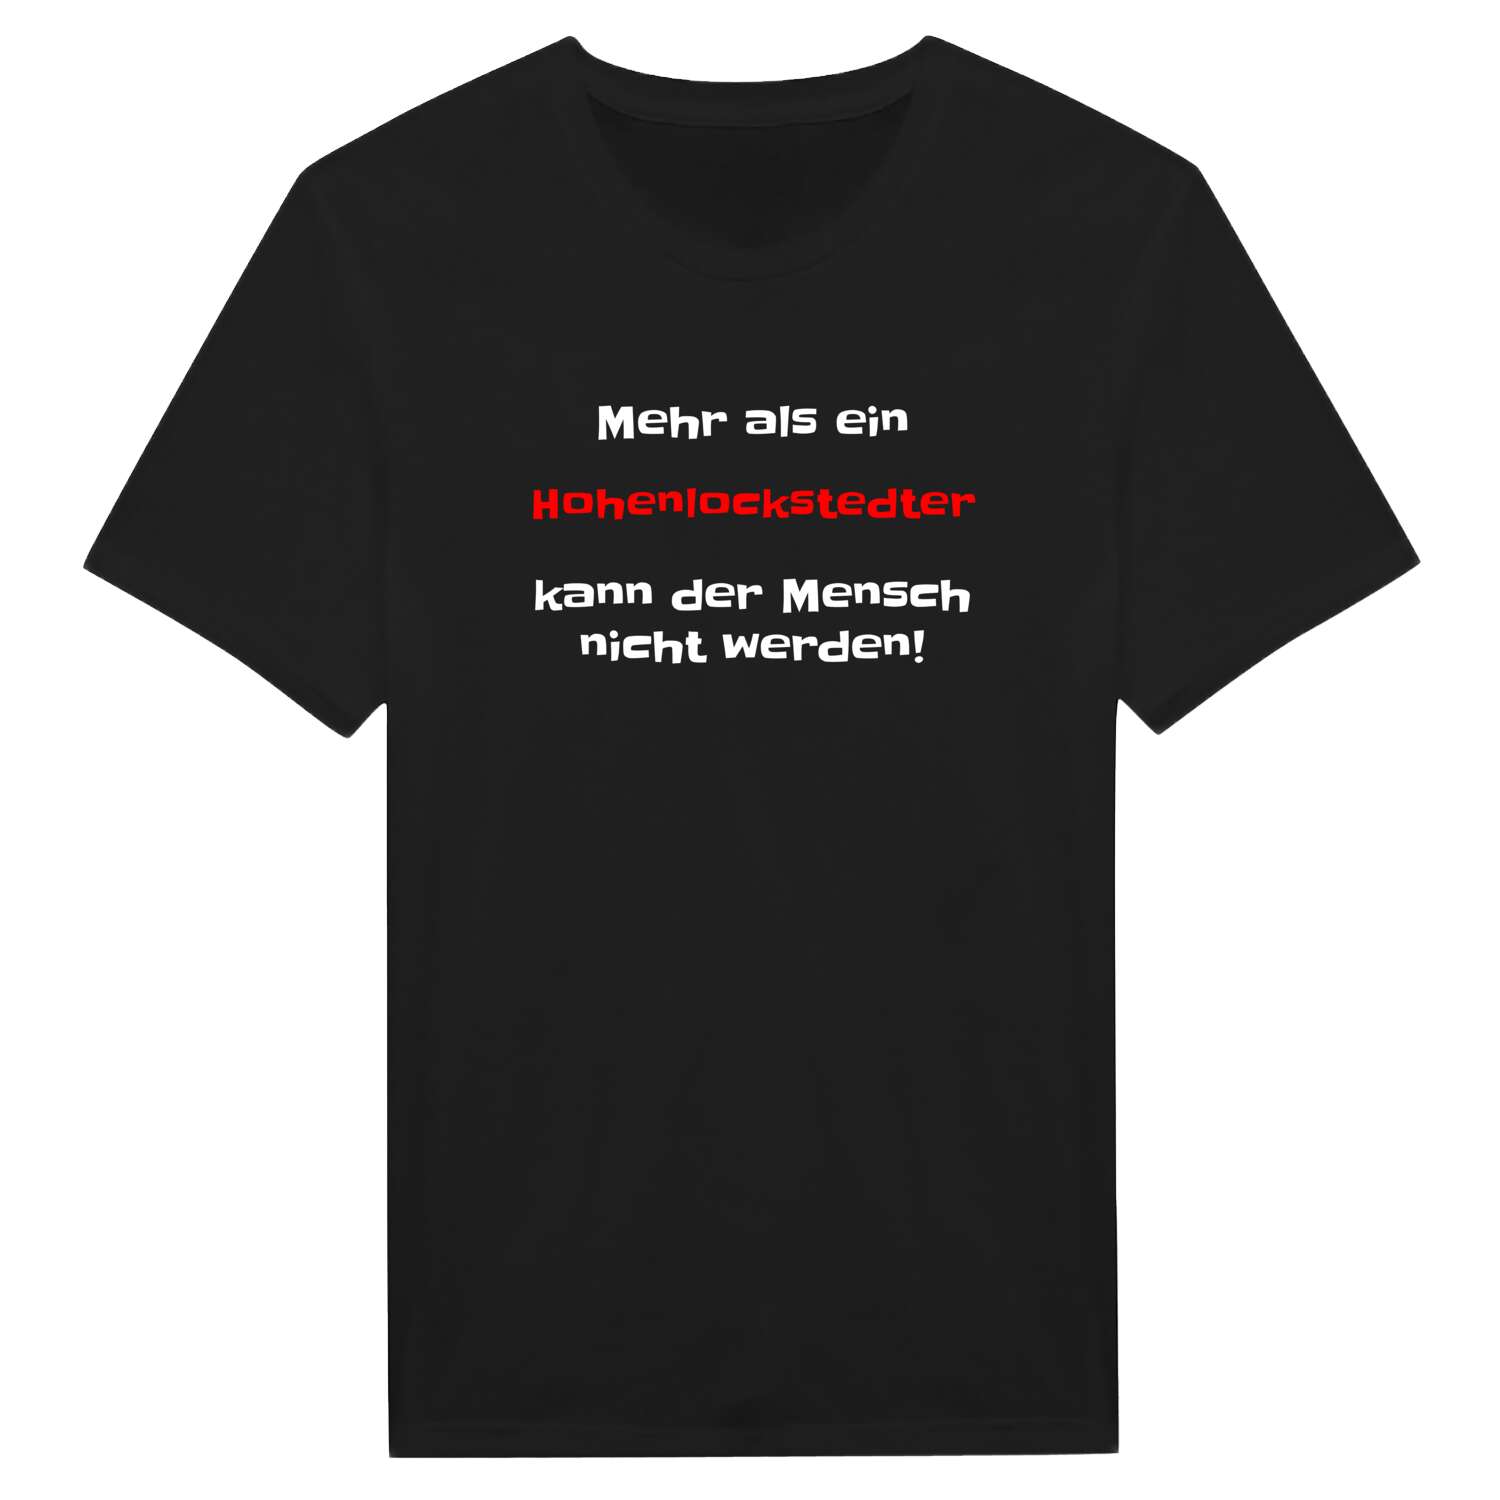 Hohenlockstedt T-Shirt »Mehr als ein«